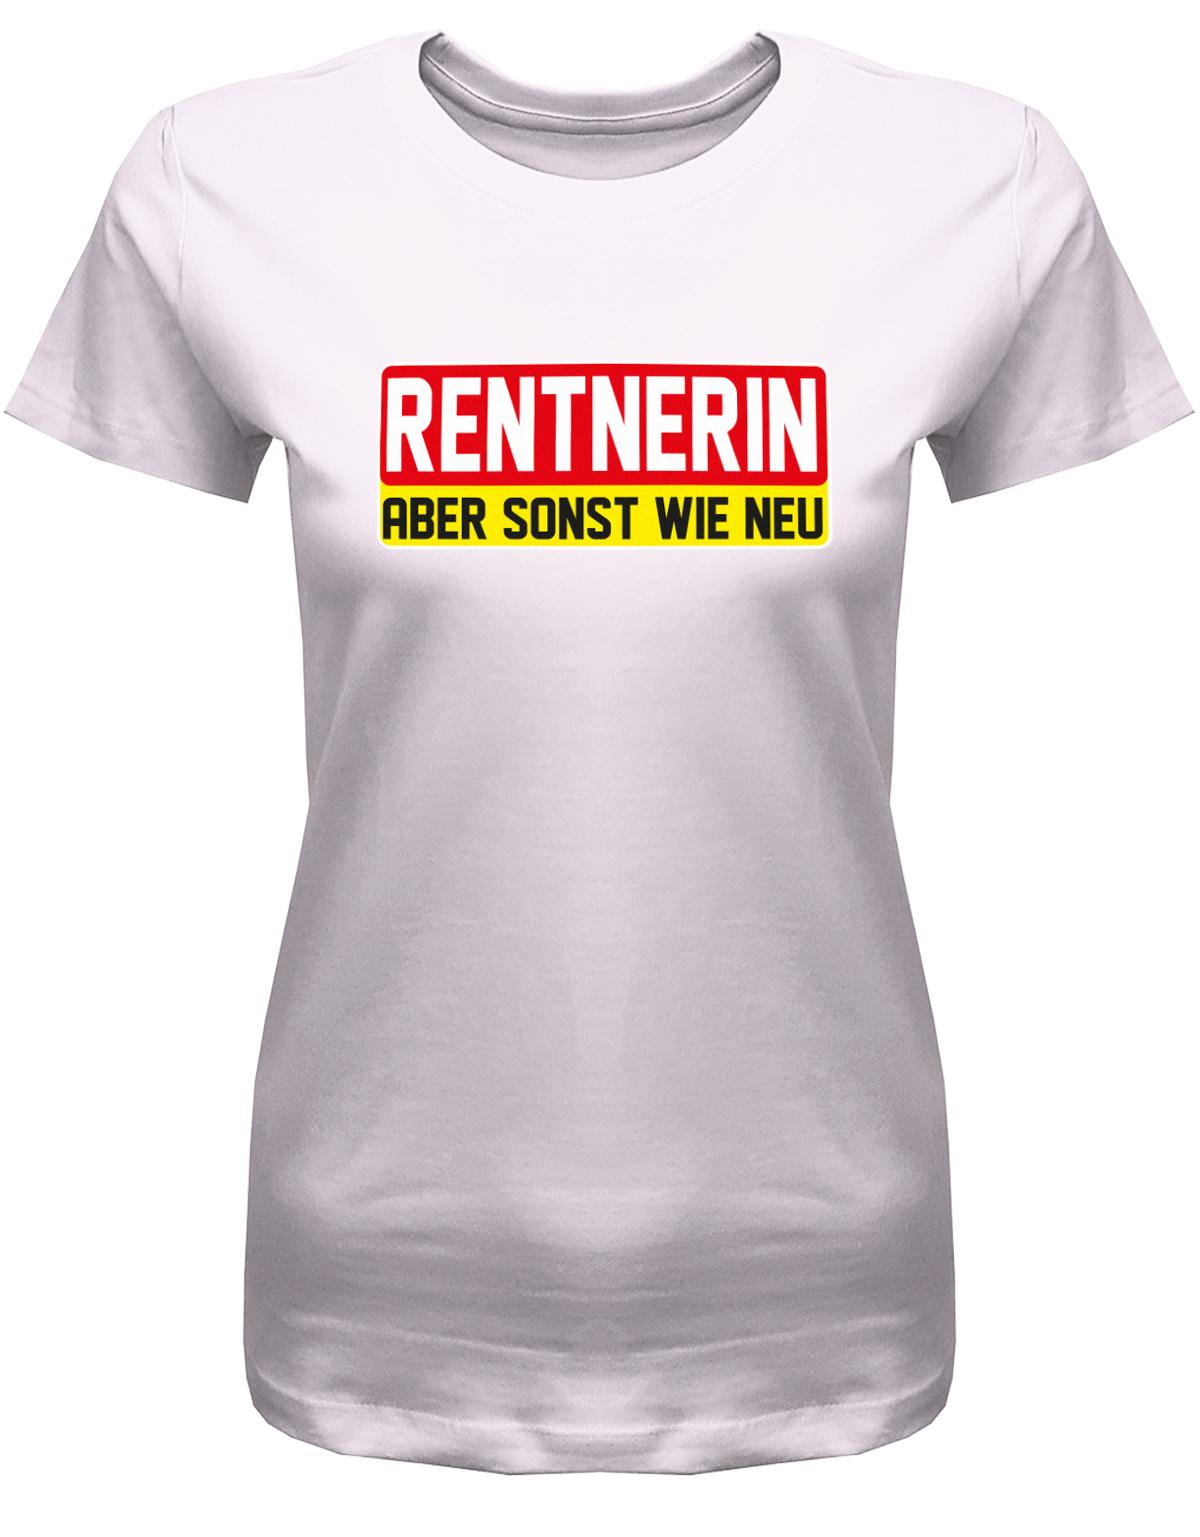 Rentnerin-aber-sonst-wie-neu-Damen-rente-Shirt-Rosa